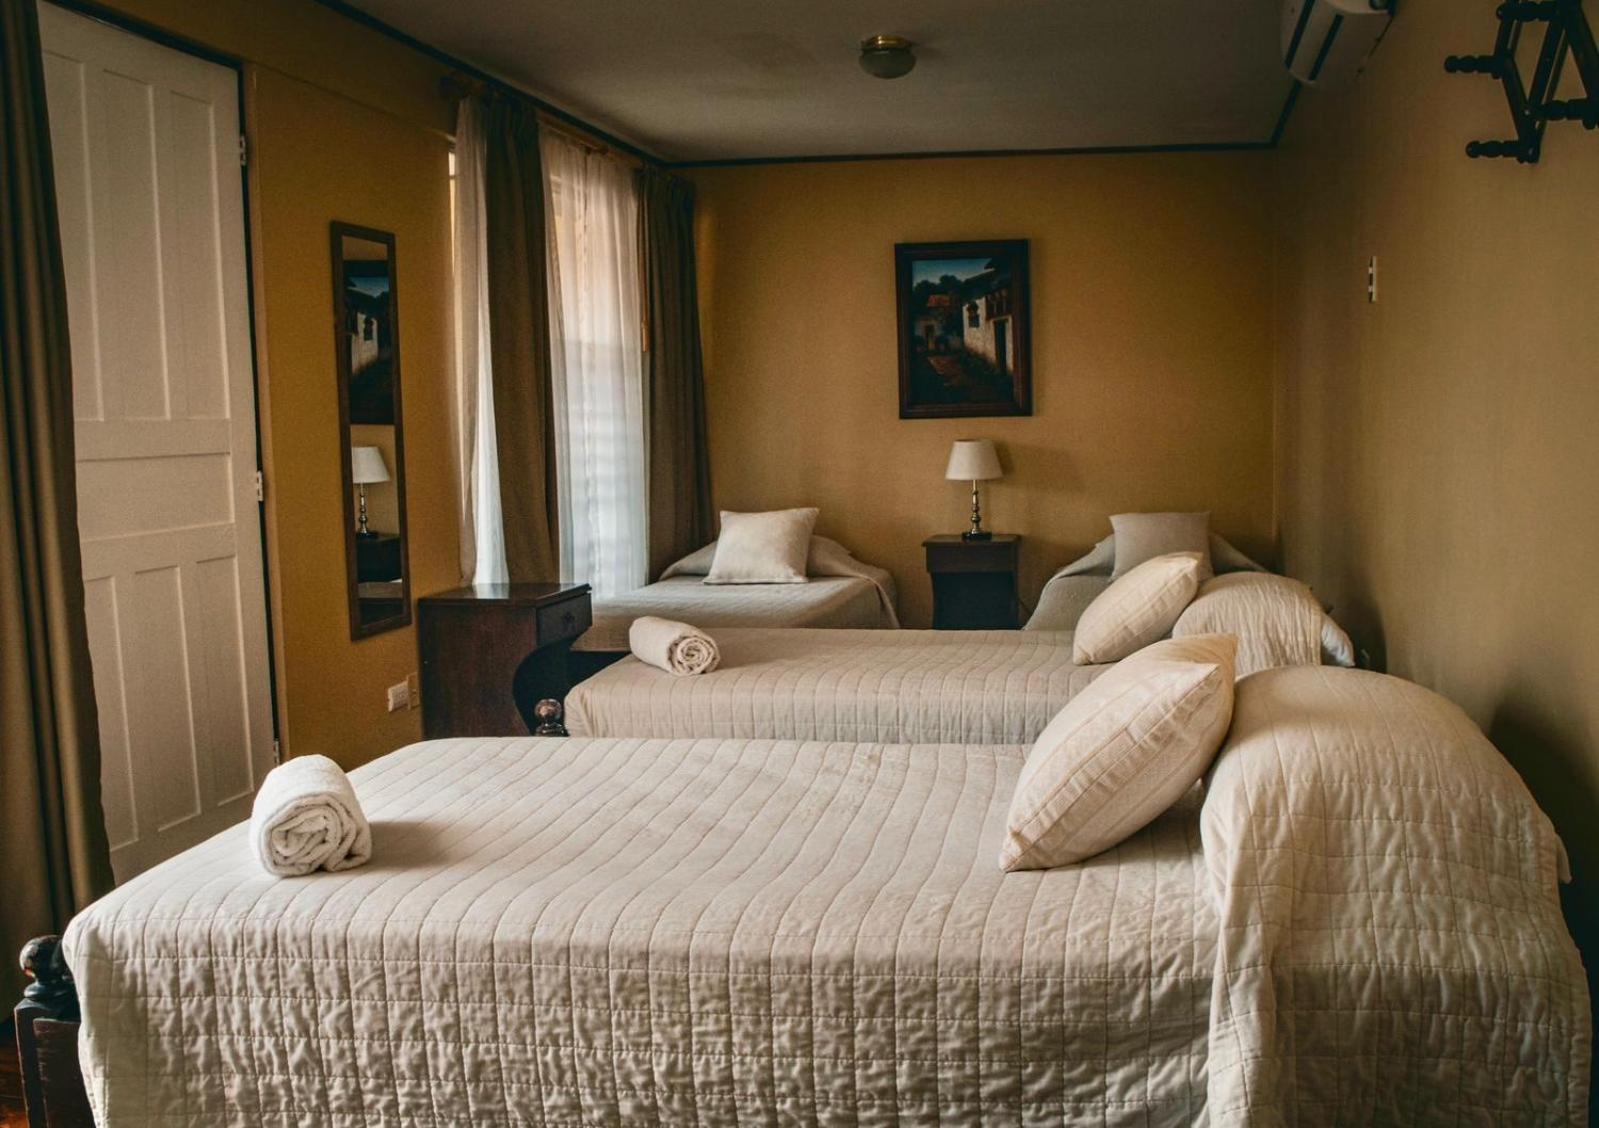 Hotel 1915 Inn & Suites Alajuela Dış mekan fotoğraf